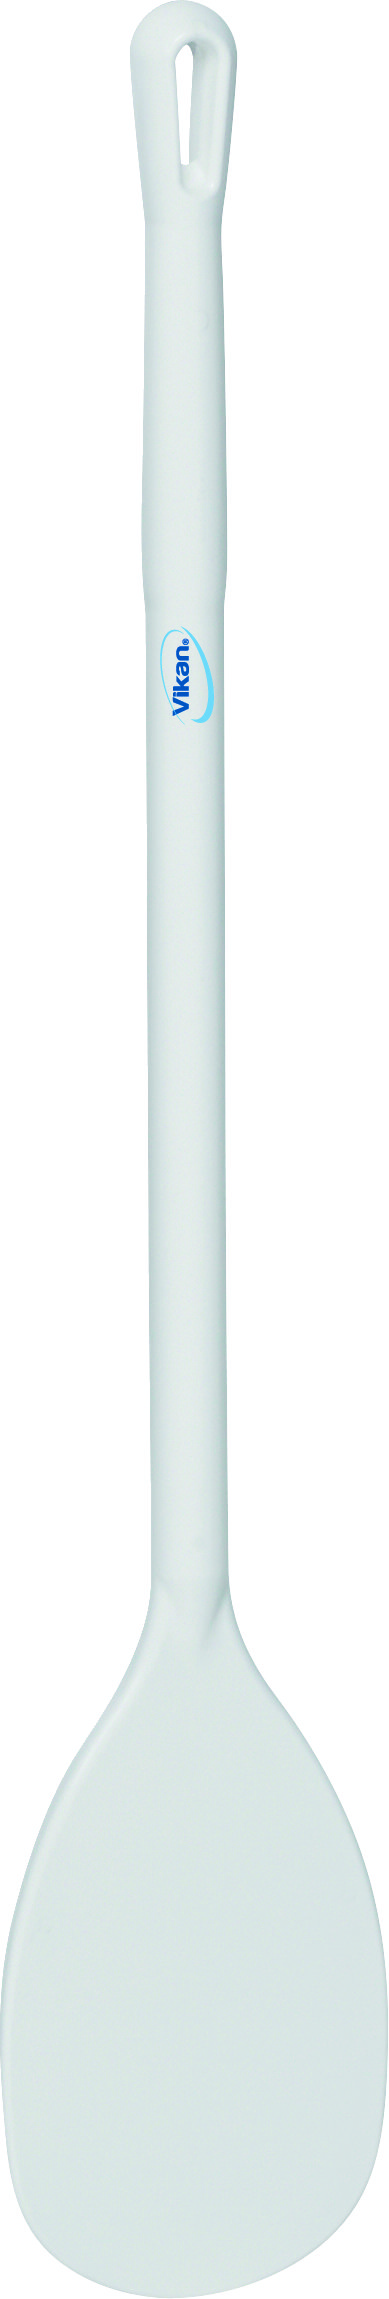 Весло-мешалка малая, Ø31 мм, 890 мм, белый цвет